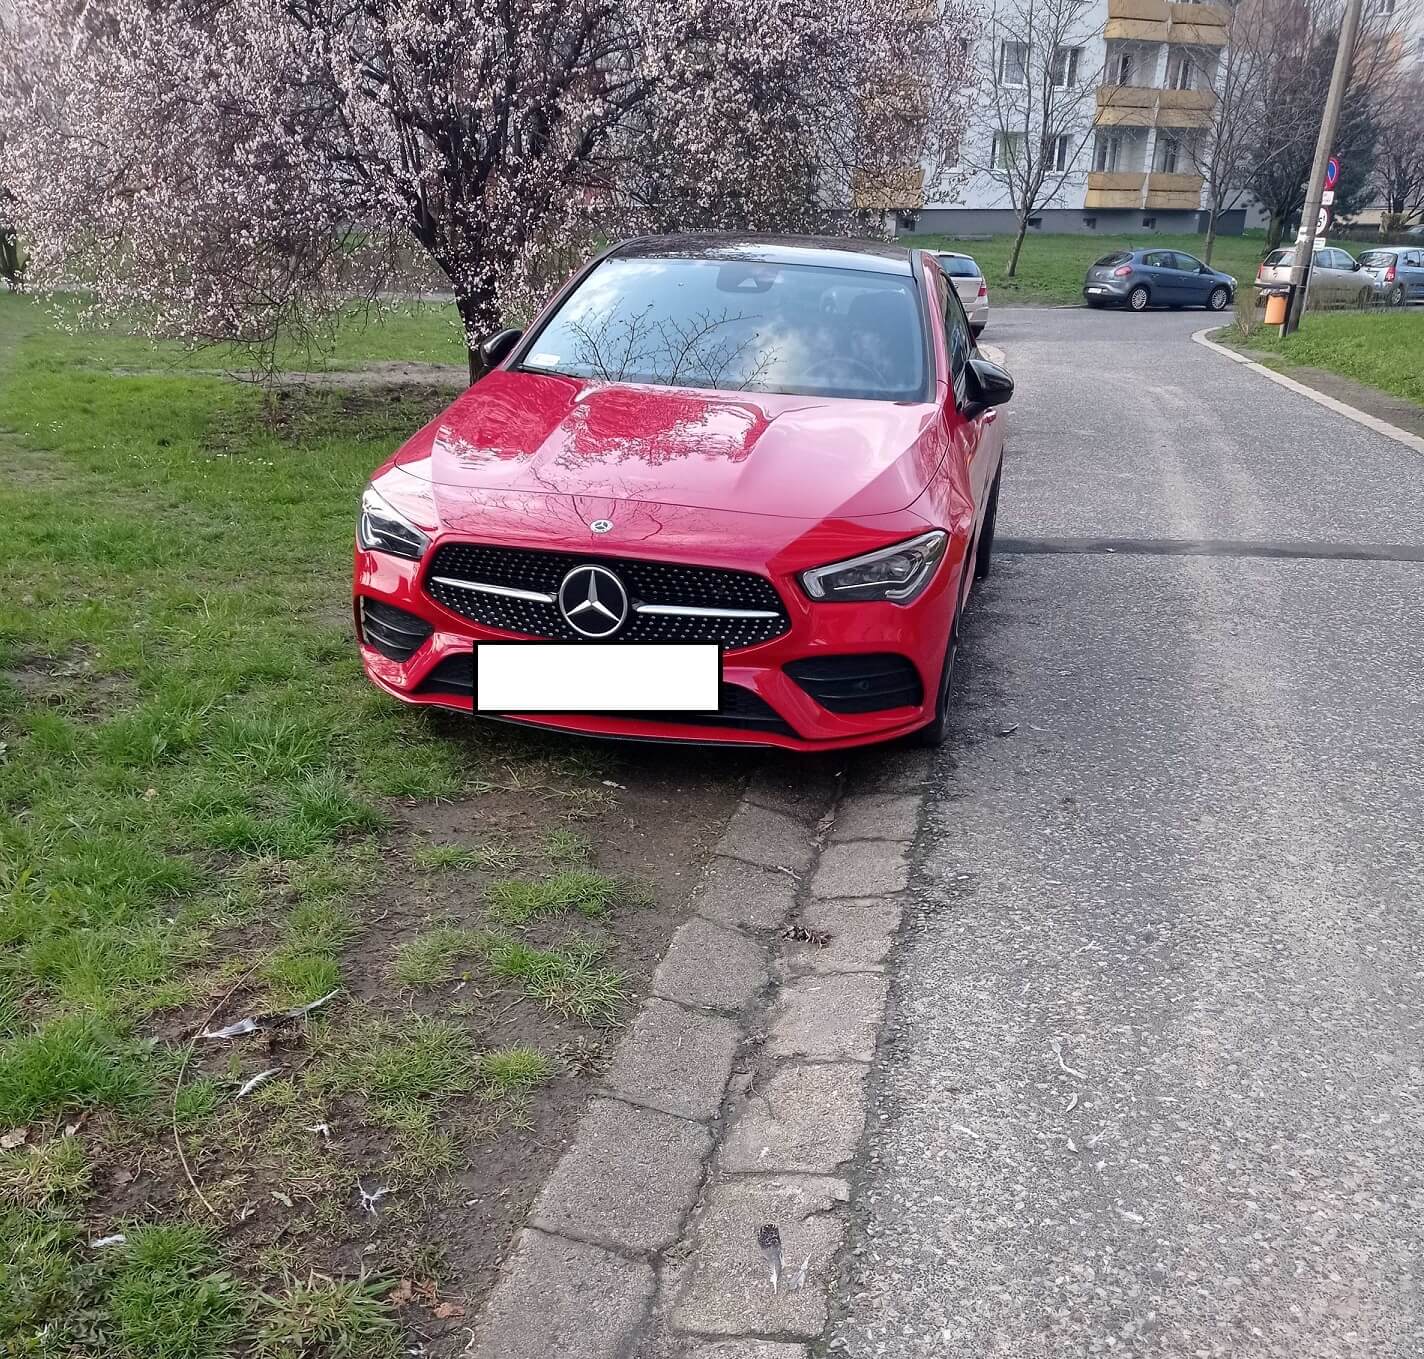 Źle parkujący kierowcy to plaga w Katowicach